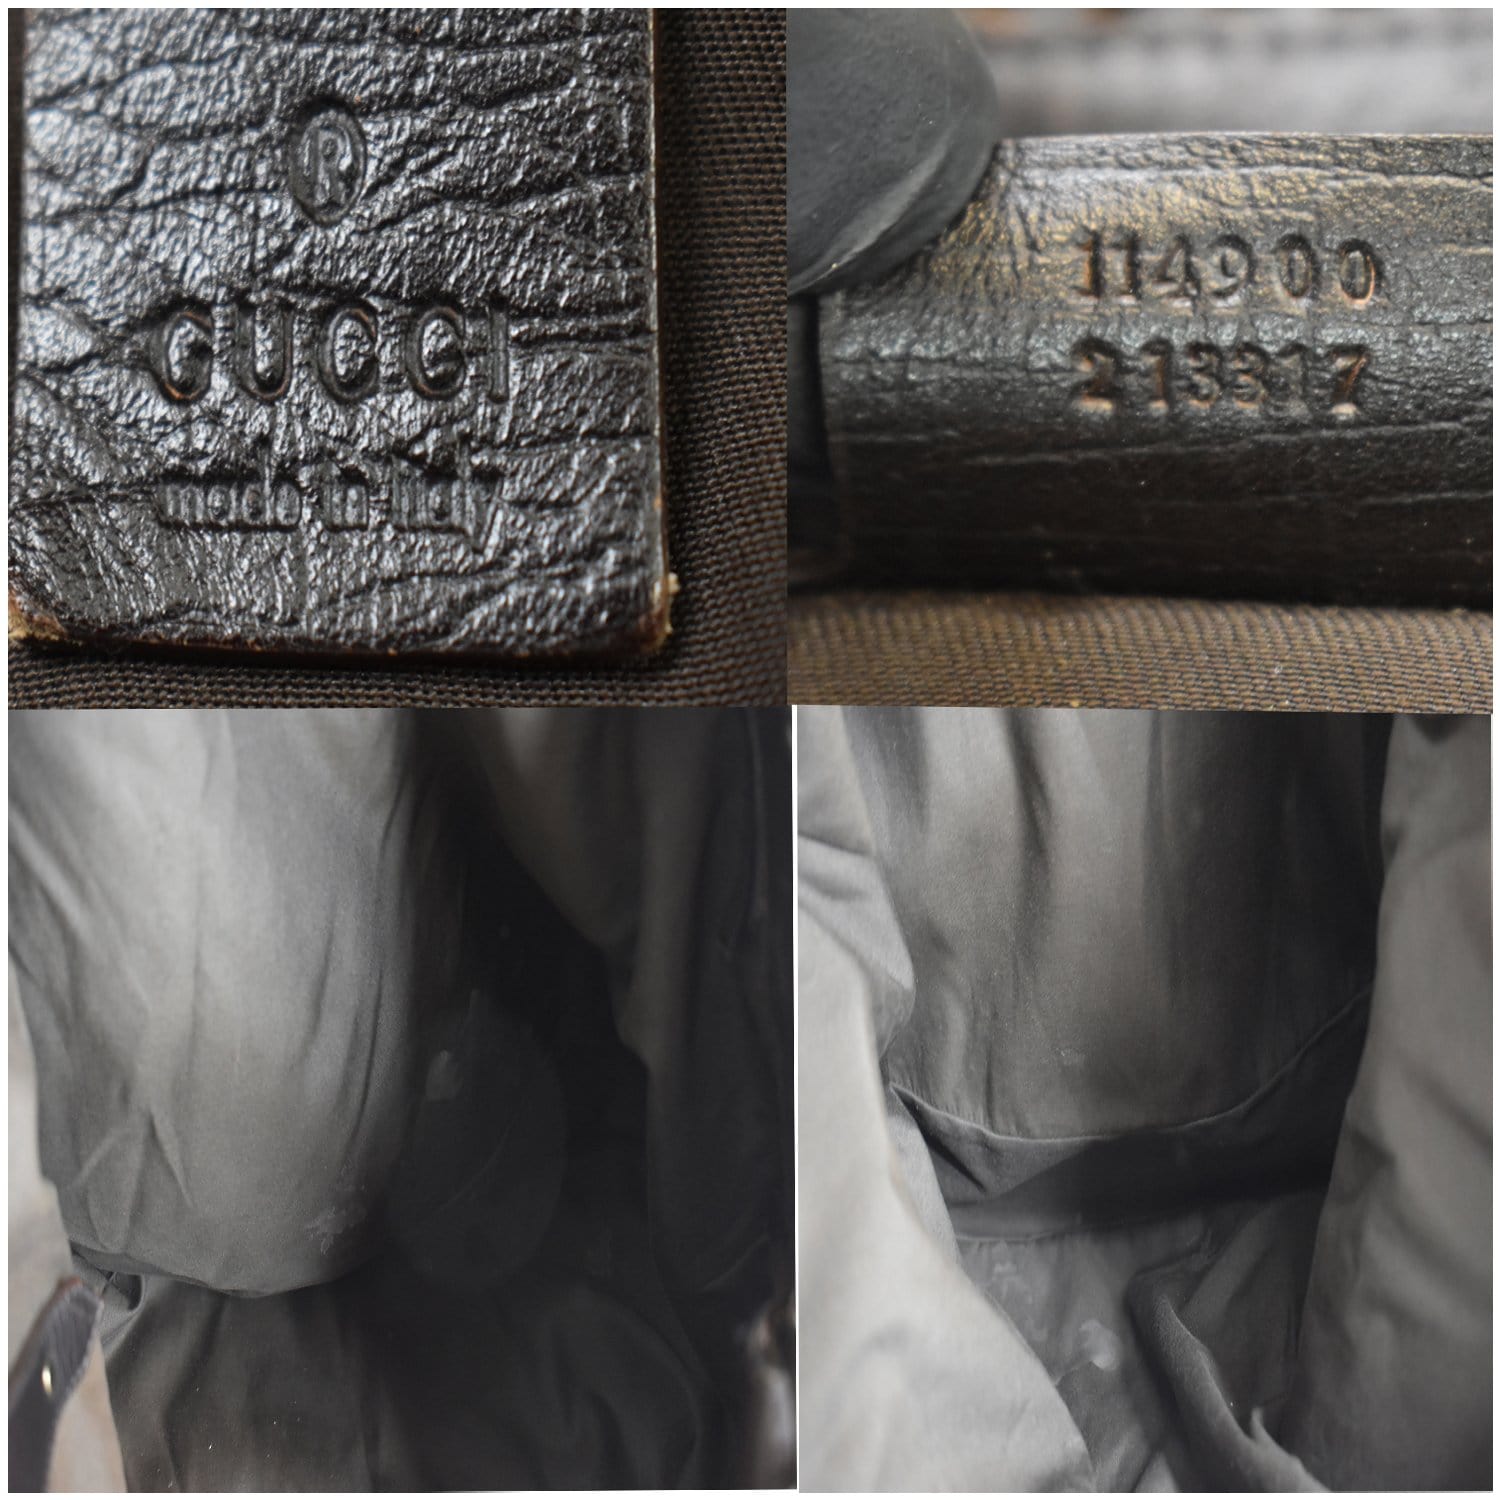 Gucci Large Cream Leather Horse Bit Hobo Handbag Whipstitch Shoulder Bag